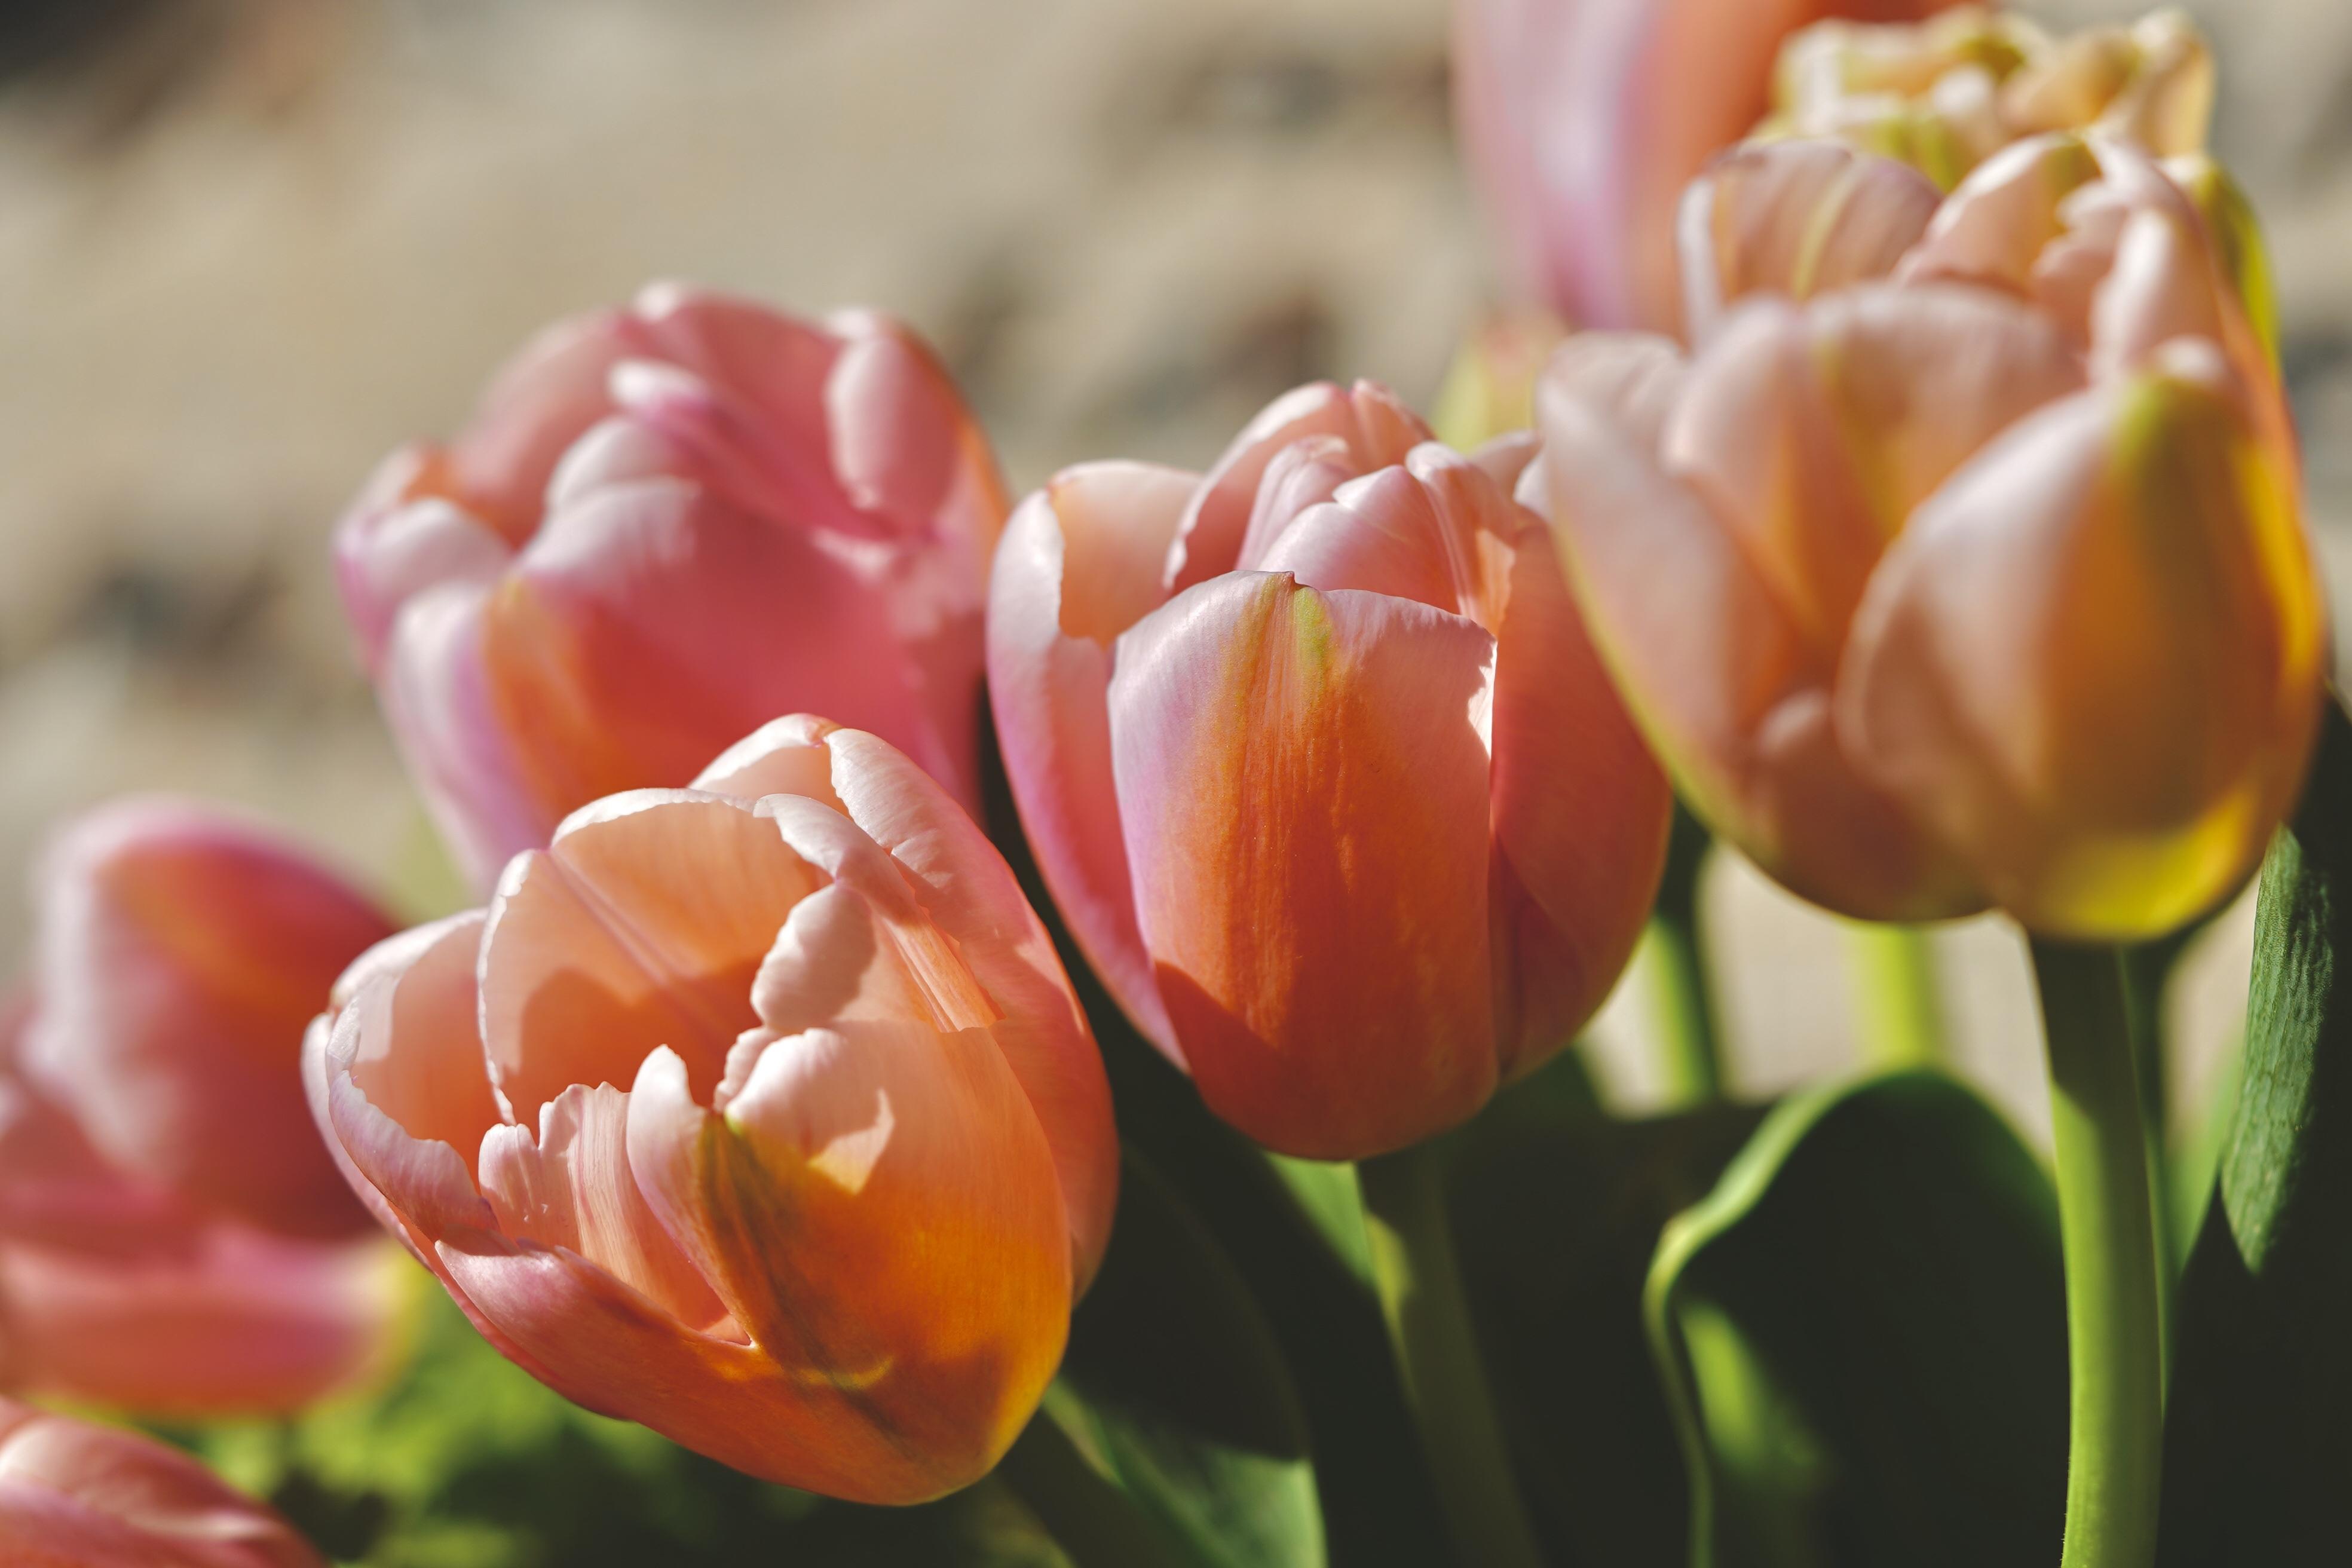 Tulip Single Early 'Apricot Beauty' - Tulip from Leo Berbee Bulb Company